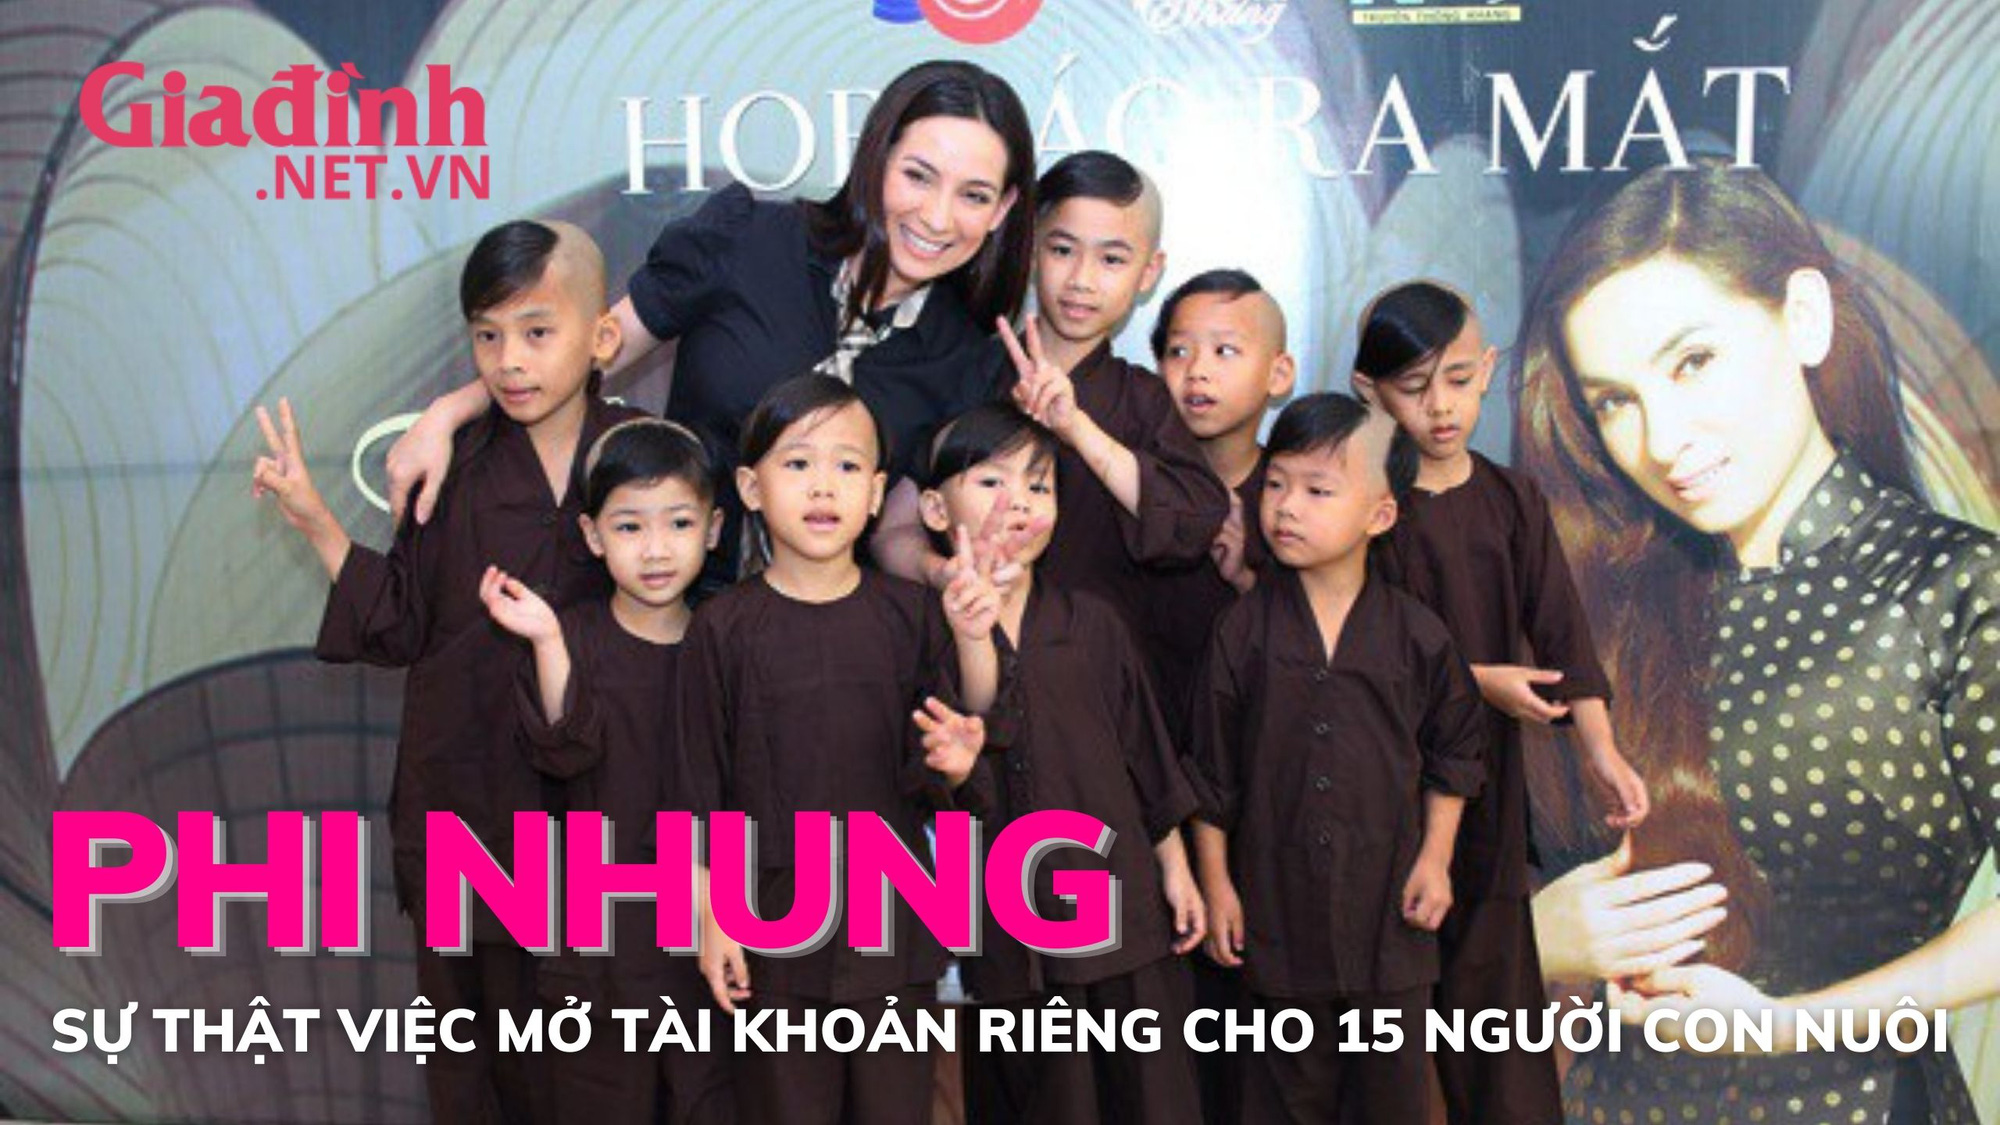 Sự thật về việc Phi Nhung mở tài khoản tiết kiệm cho 15 người con nuôi